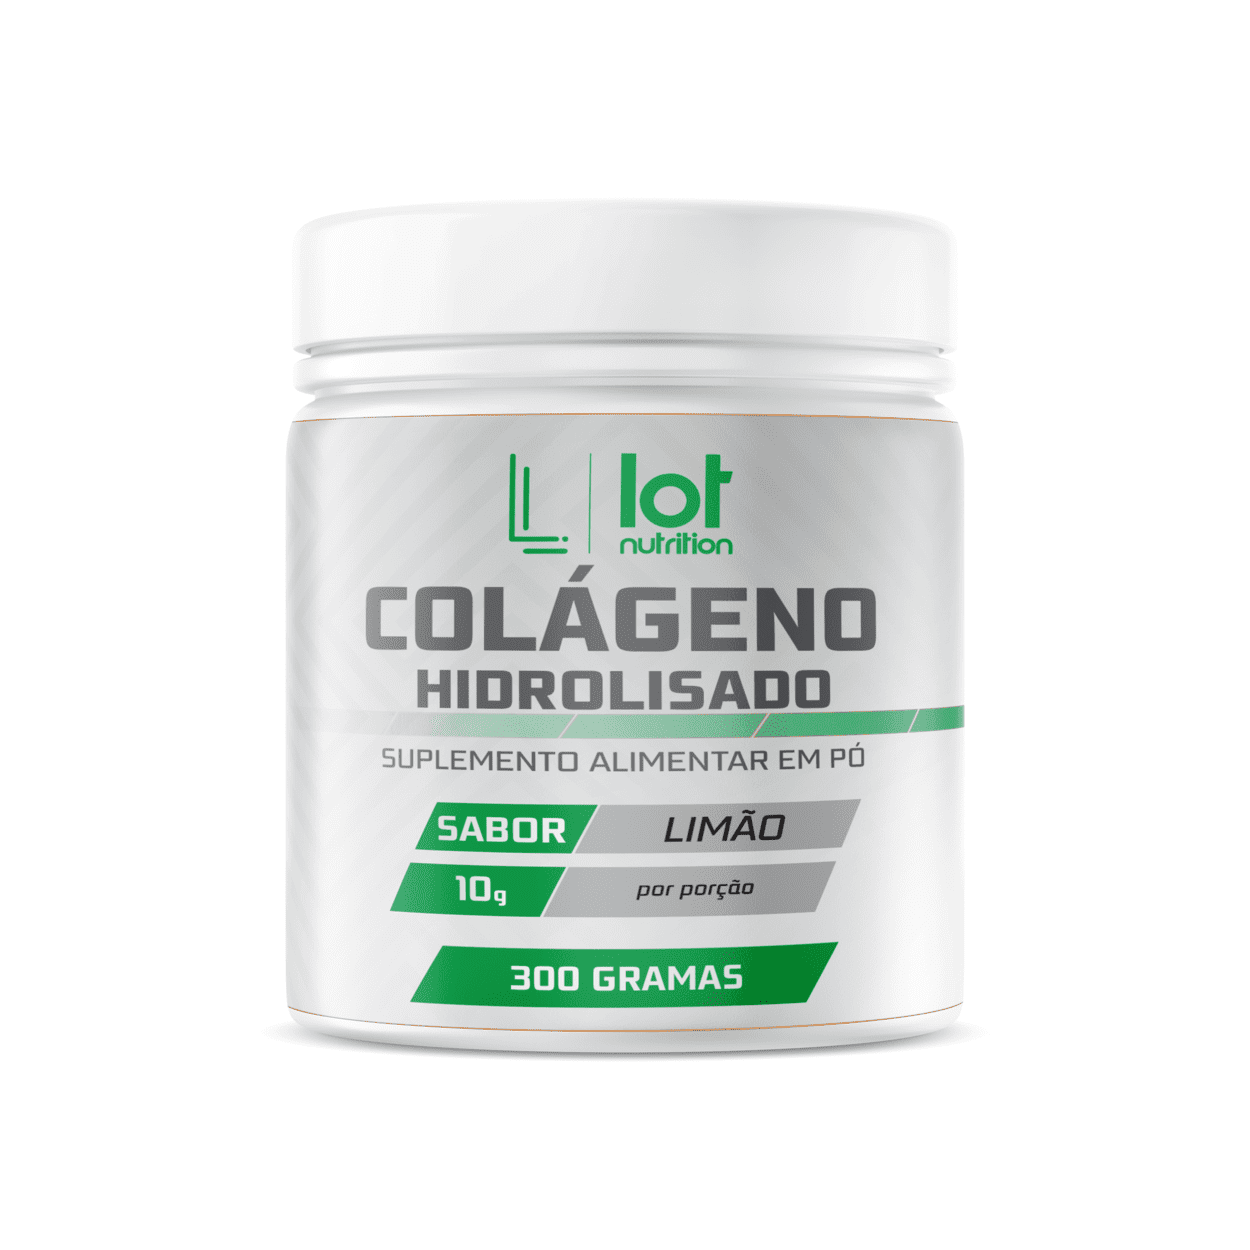 Colágeno hidrolisado 300g Lot Nutrition Sabor Limão